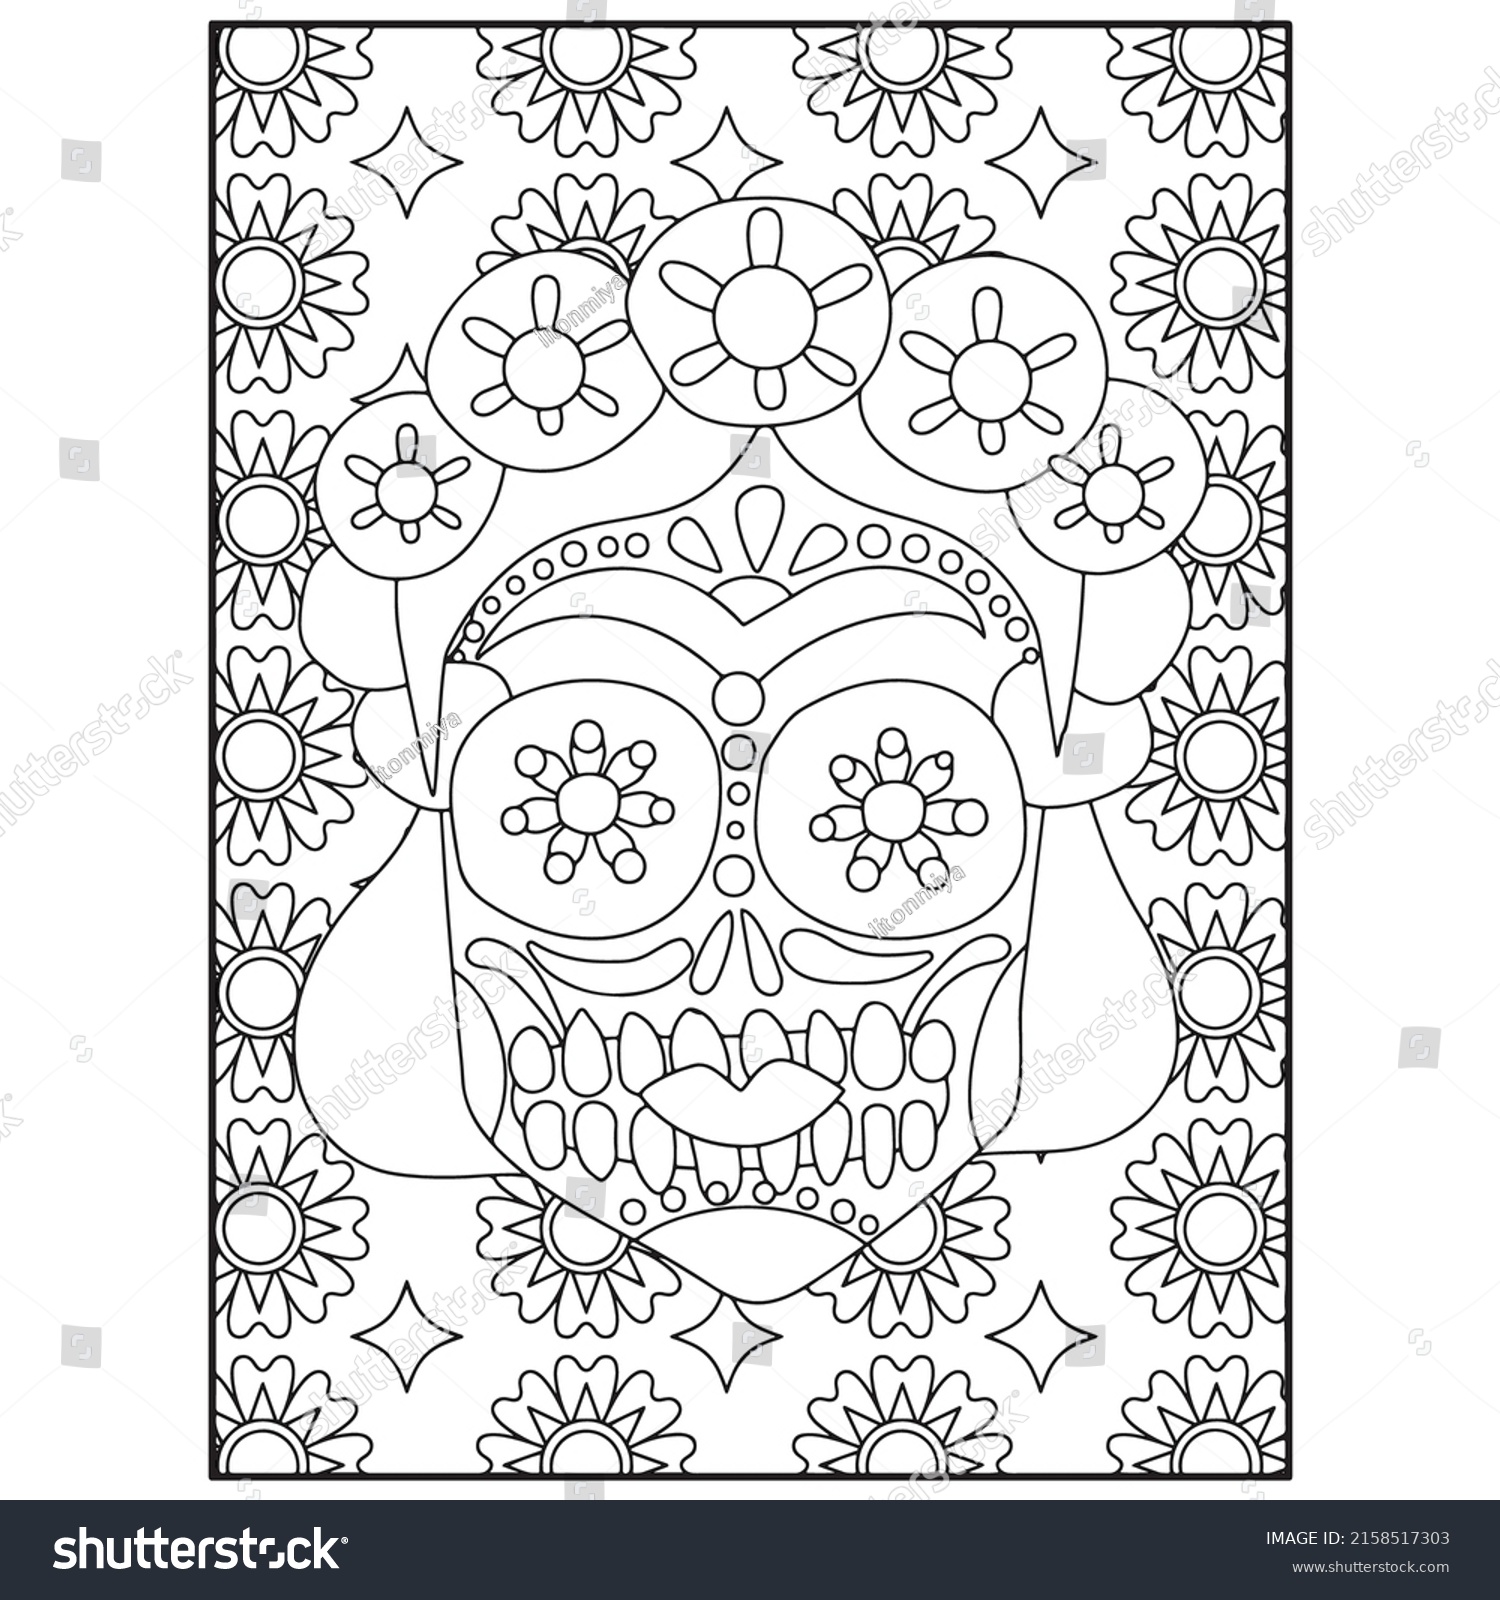 SVG of Sugar Skull Adult Coloring Pages For Kdp svg